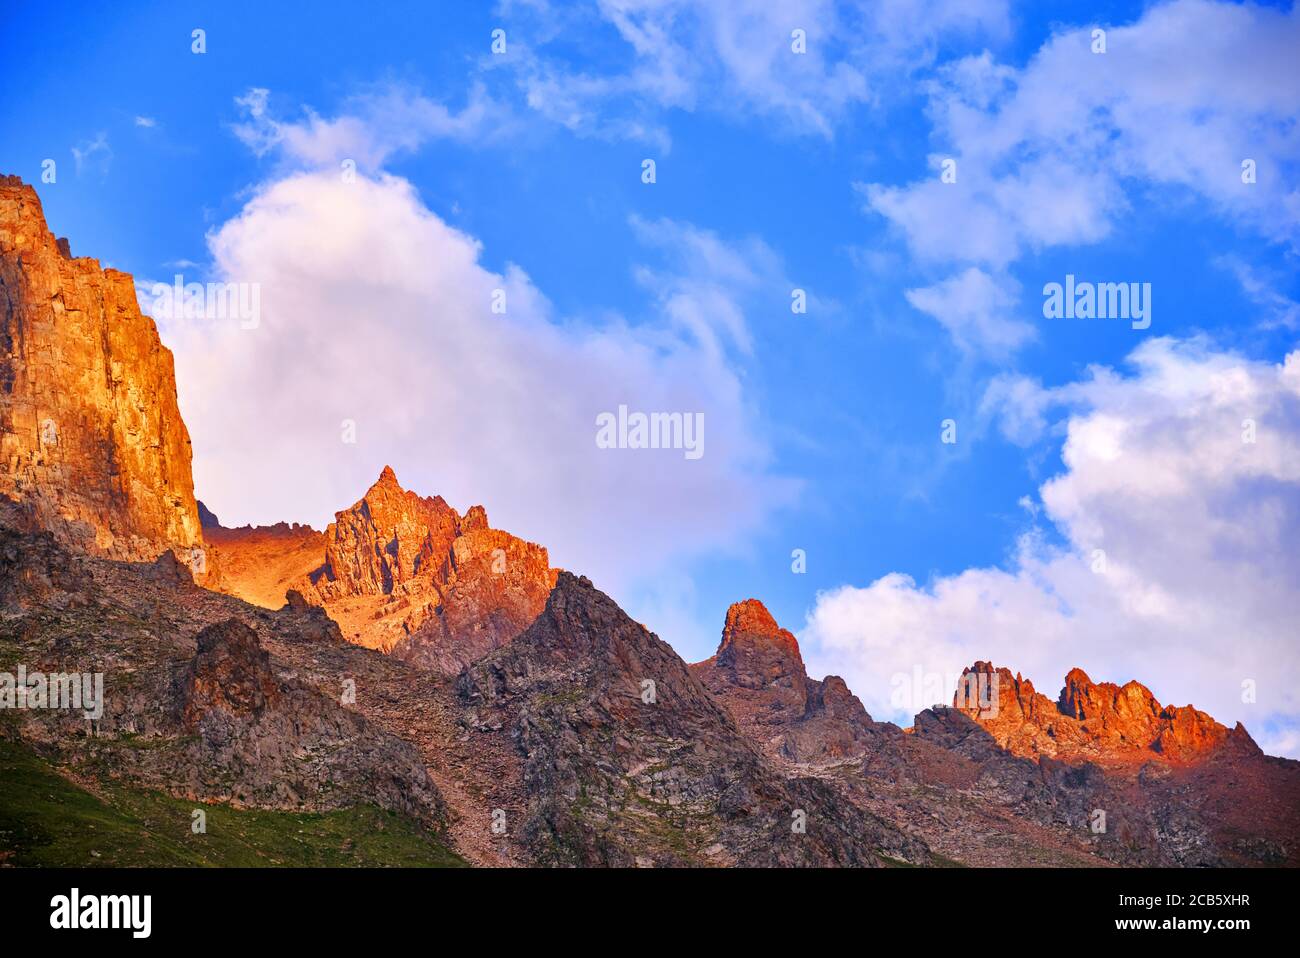 Riesige Klippen auf dem Hintergrund des blauen Himmels mit Wolken im Licht der untergehenden Sonne; majestätische Aussicht auf die Berge bei Sonnenuntergang Stockfoto